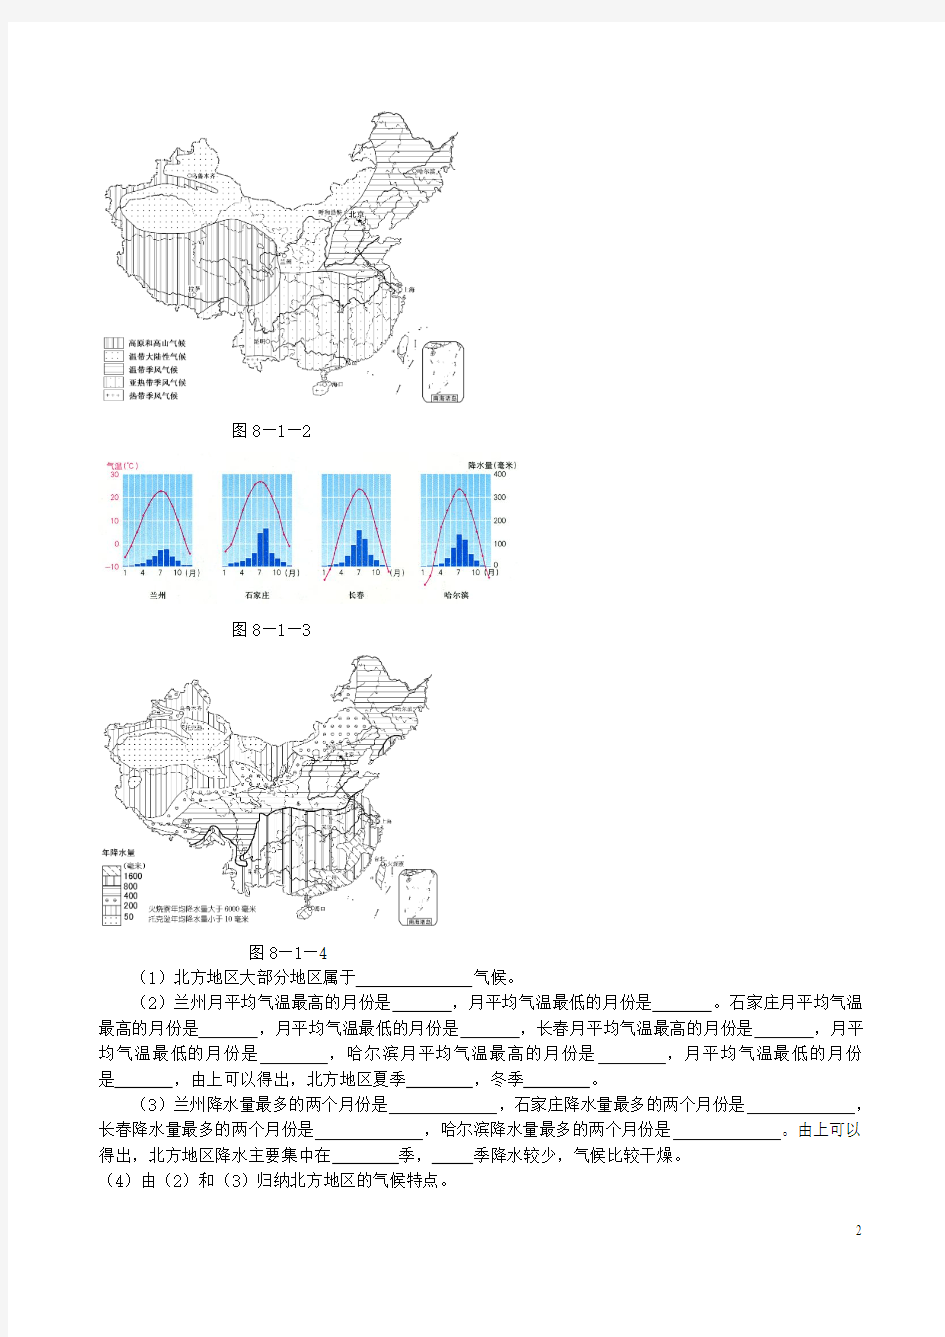 七年级地理下册 第七章 认识中国的地理区域 北方地区精选练习 中图版